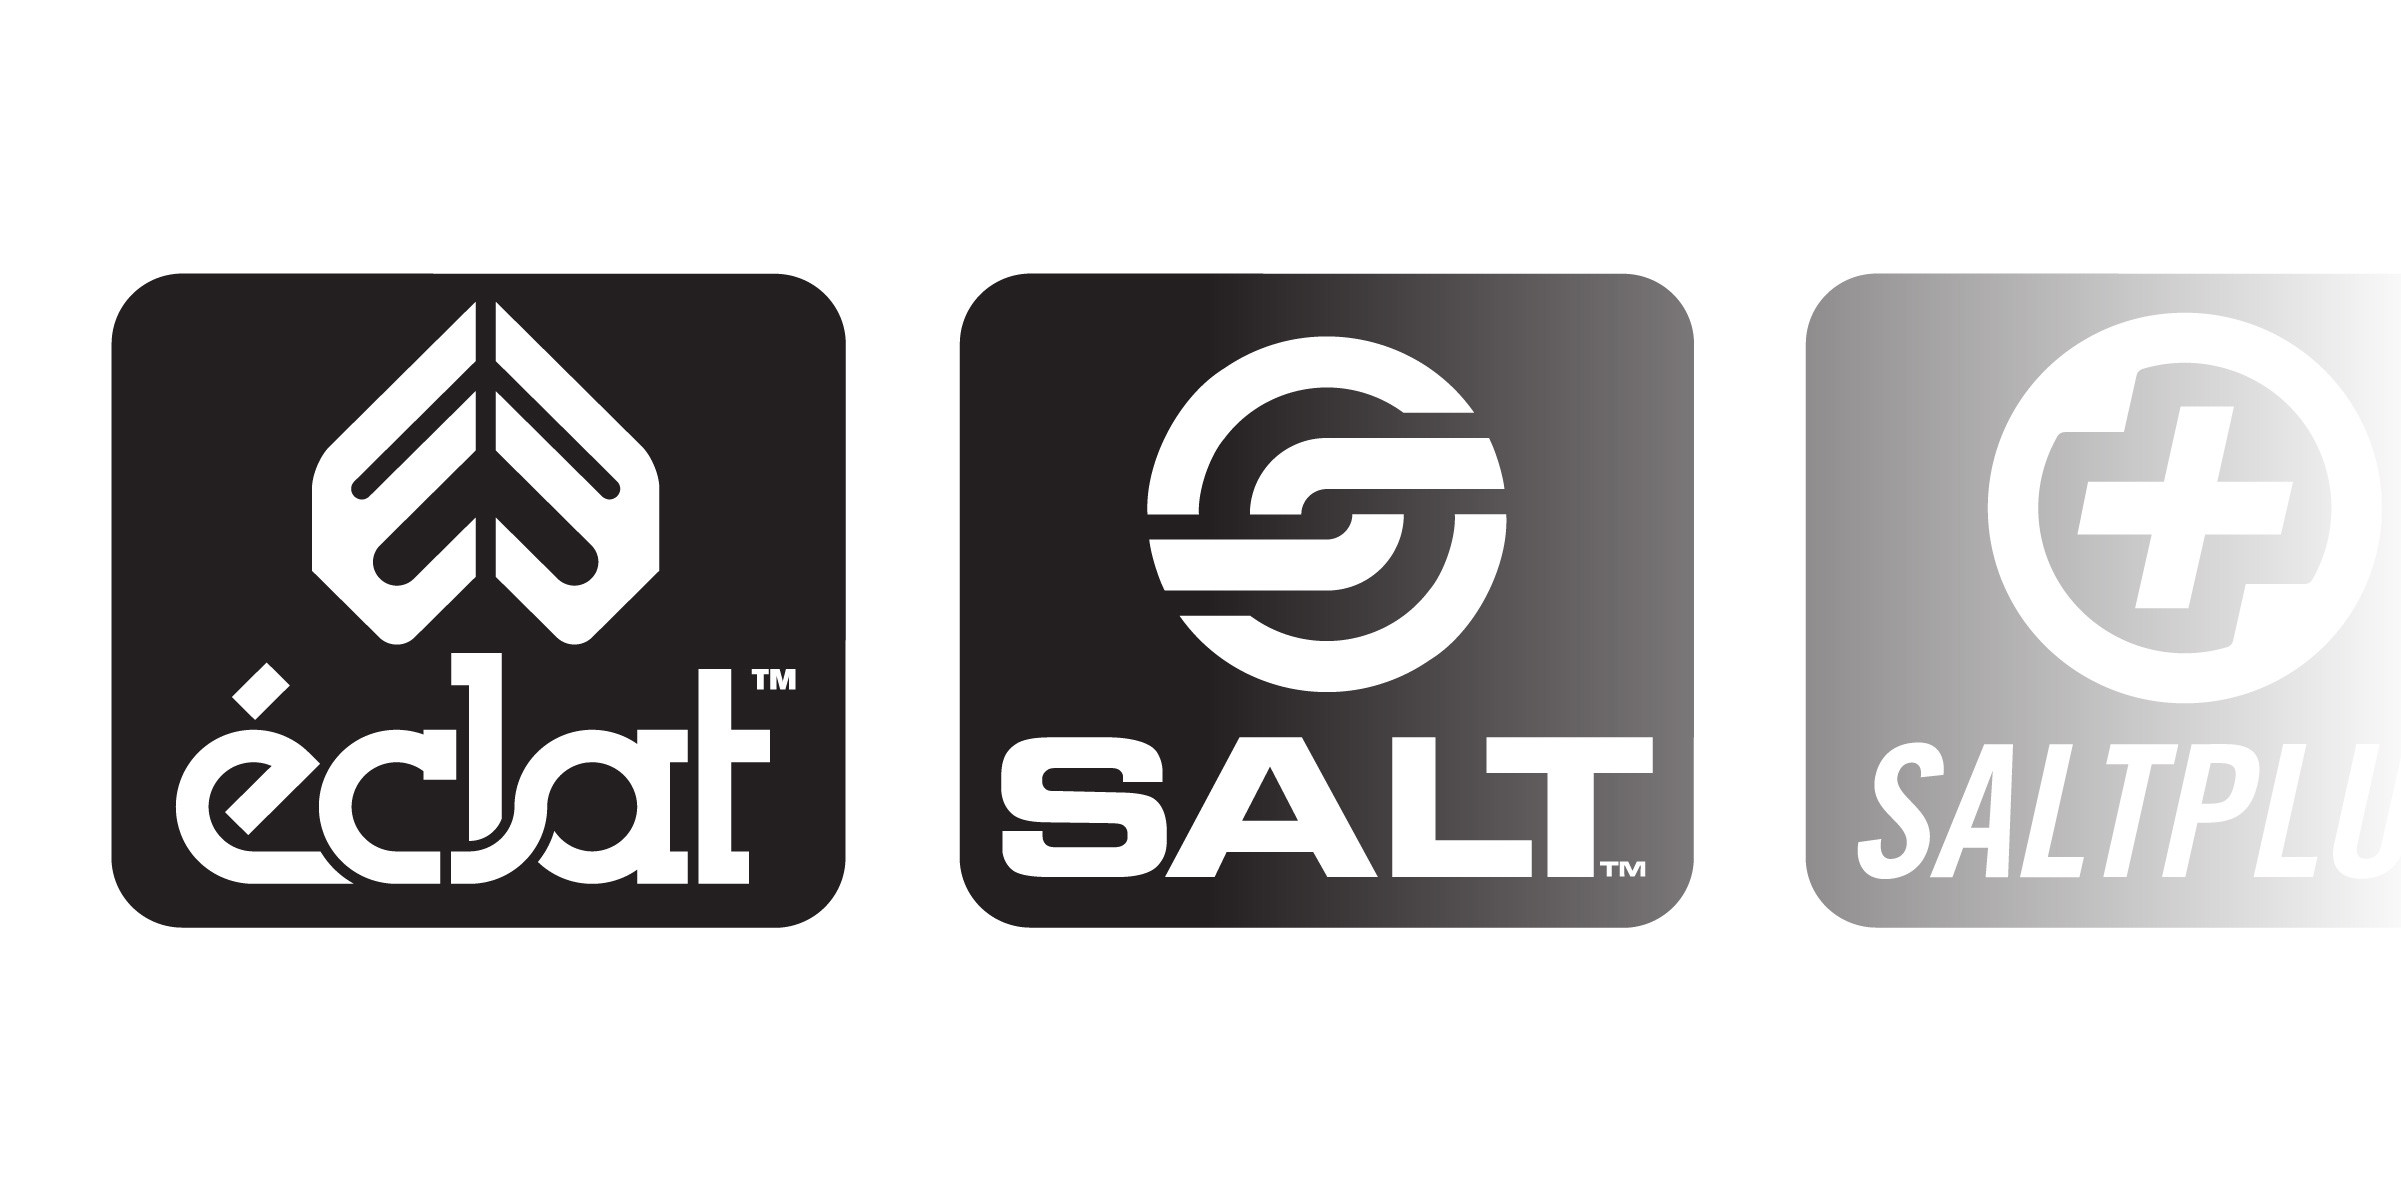 Eclat / Salt / Salt+ / We the people 